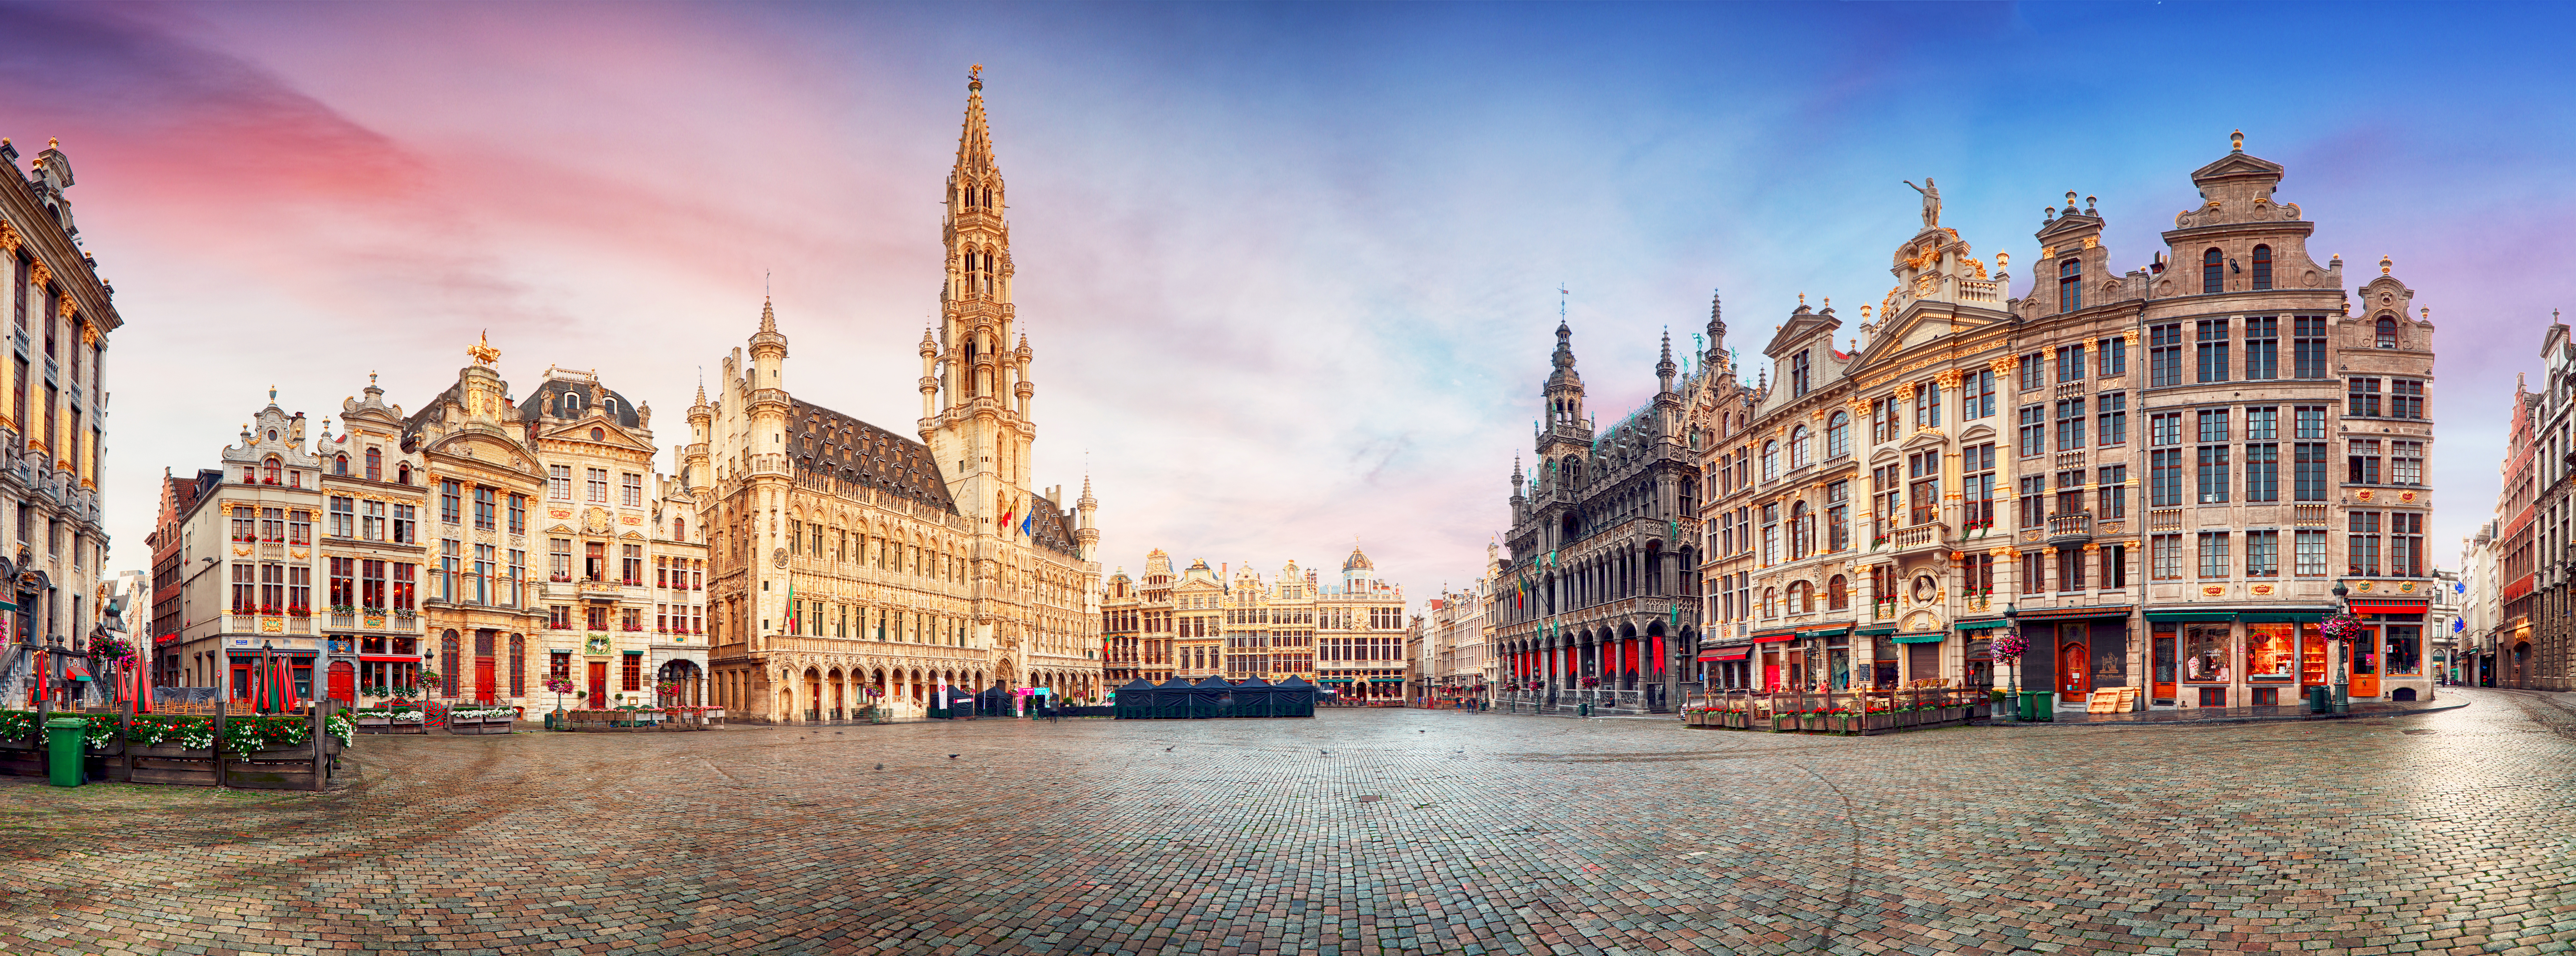 Quelles solutions pour une meilleur qualité de vie à Bruxelles ?